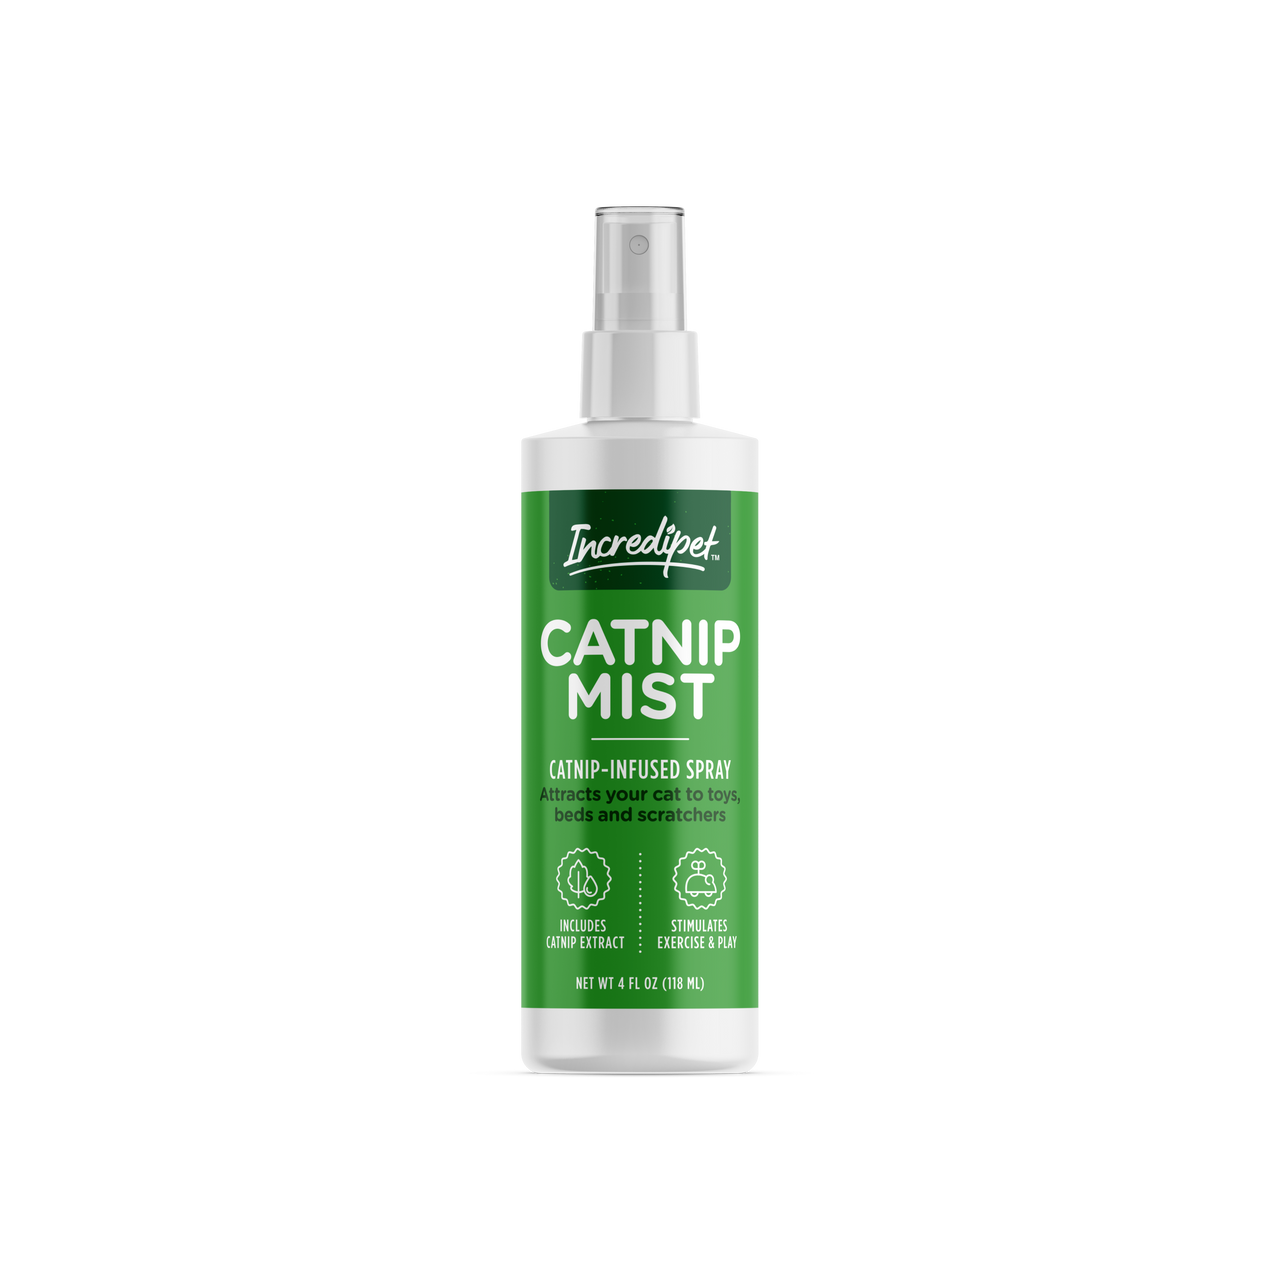 Catnip Spray -Bliss Mist from Petlinks New 7 fl oz bottle